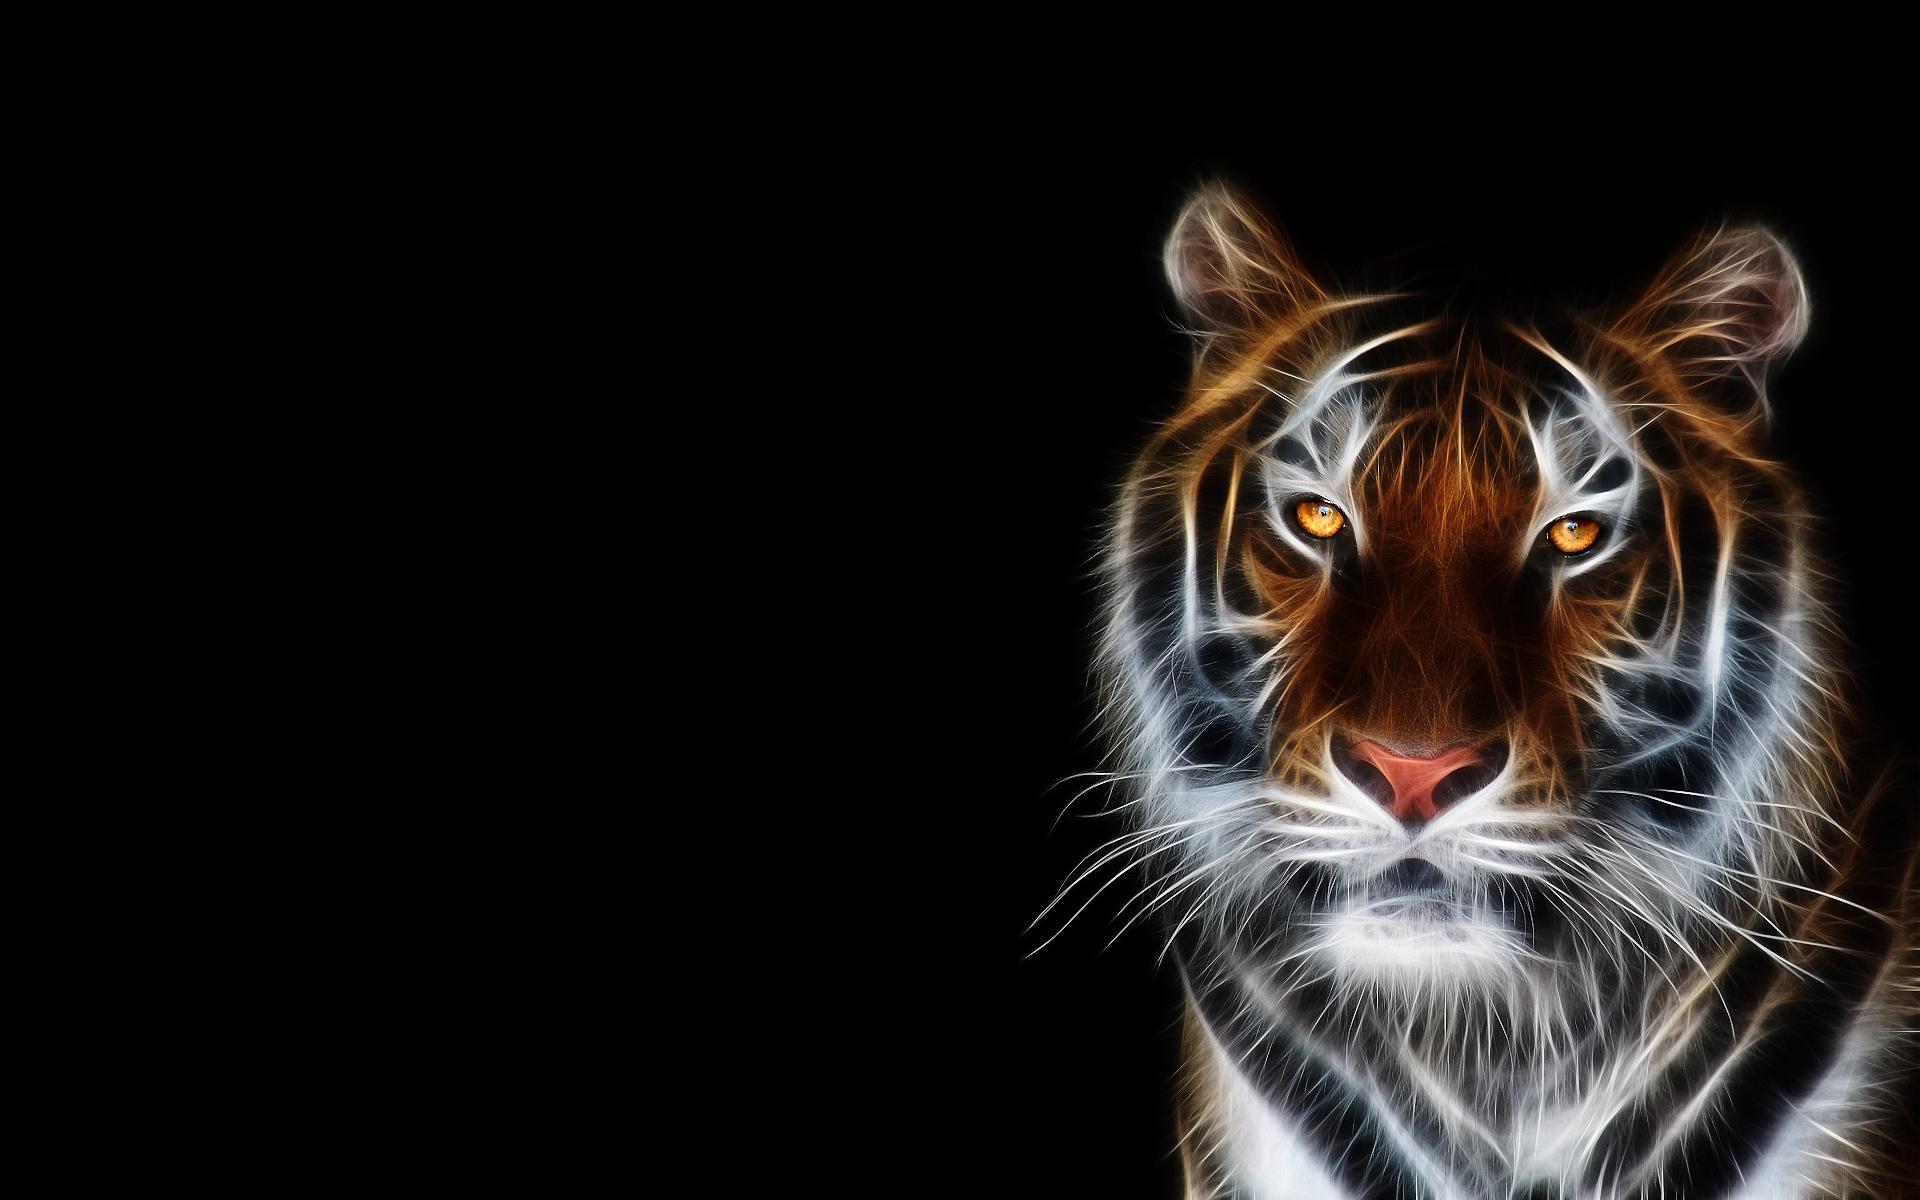 Wallpaper tiger hd